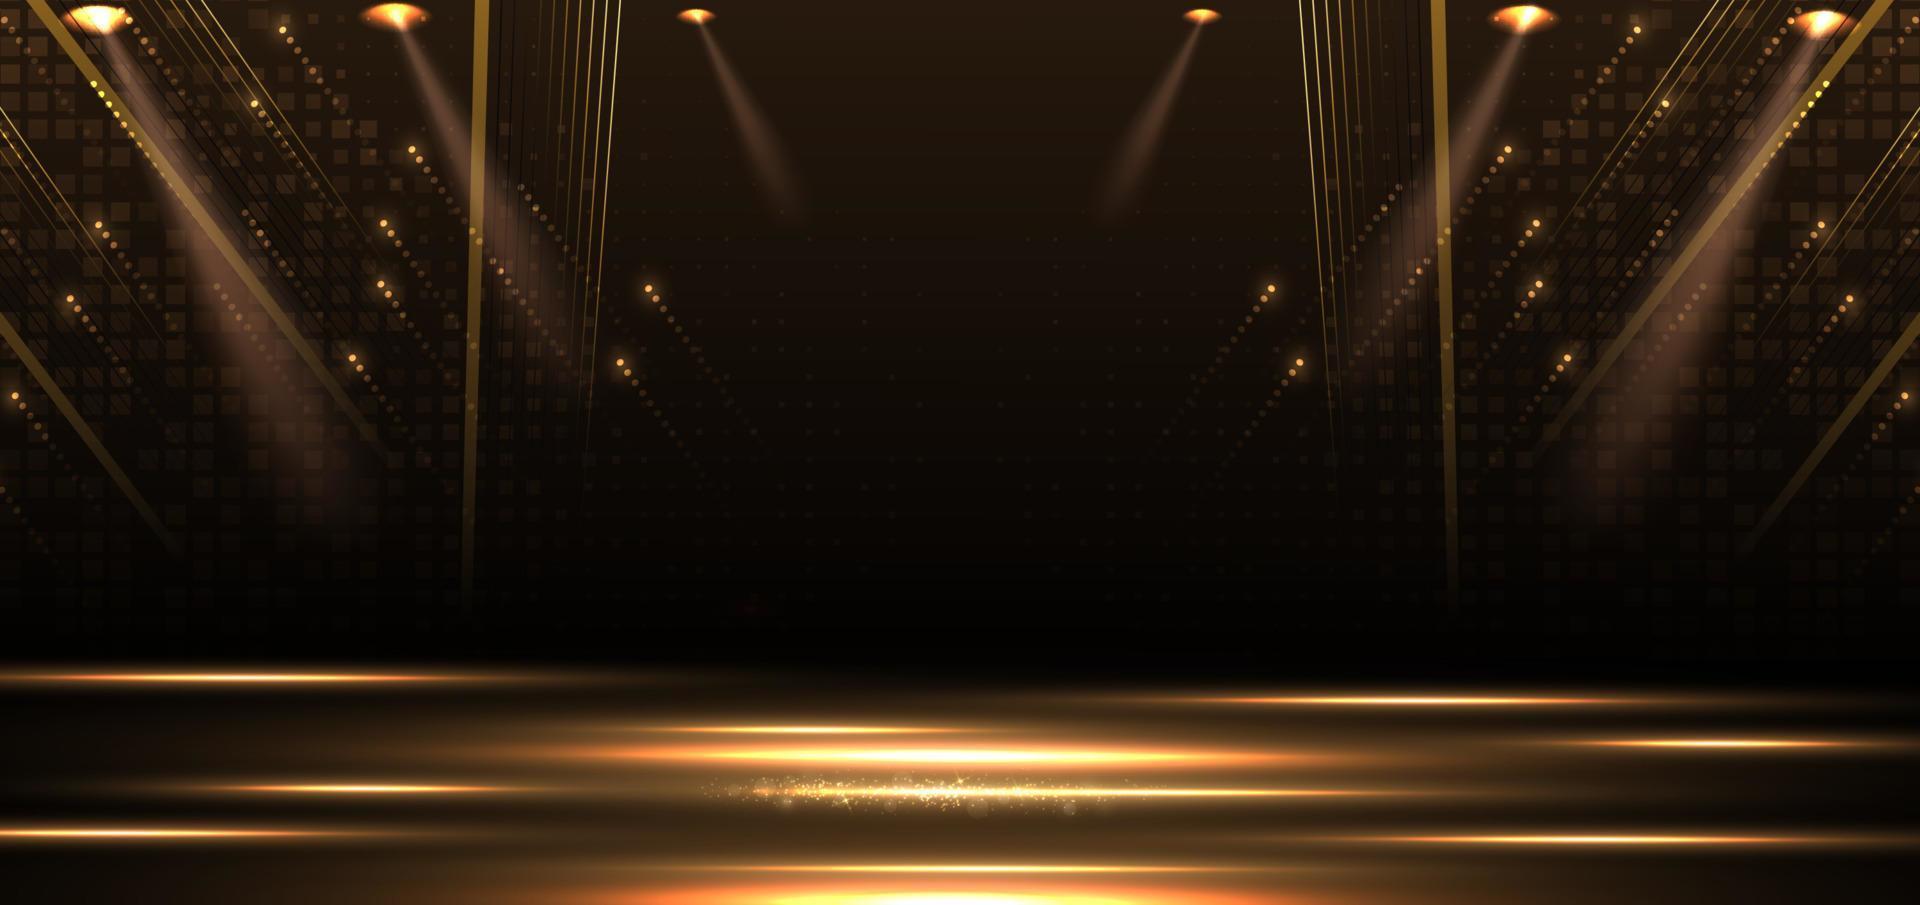 elegante escenario dorado vertical que brilla intensamente con efecto de iluminación sobre fondo negro. vector